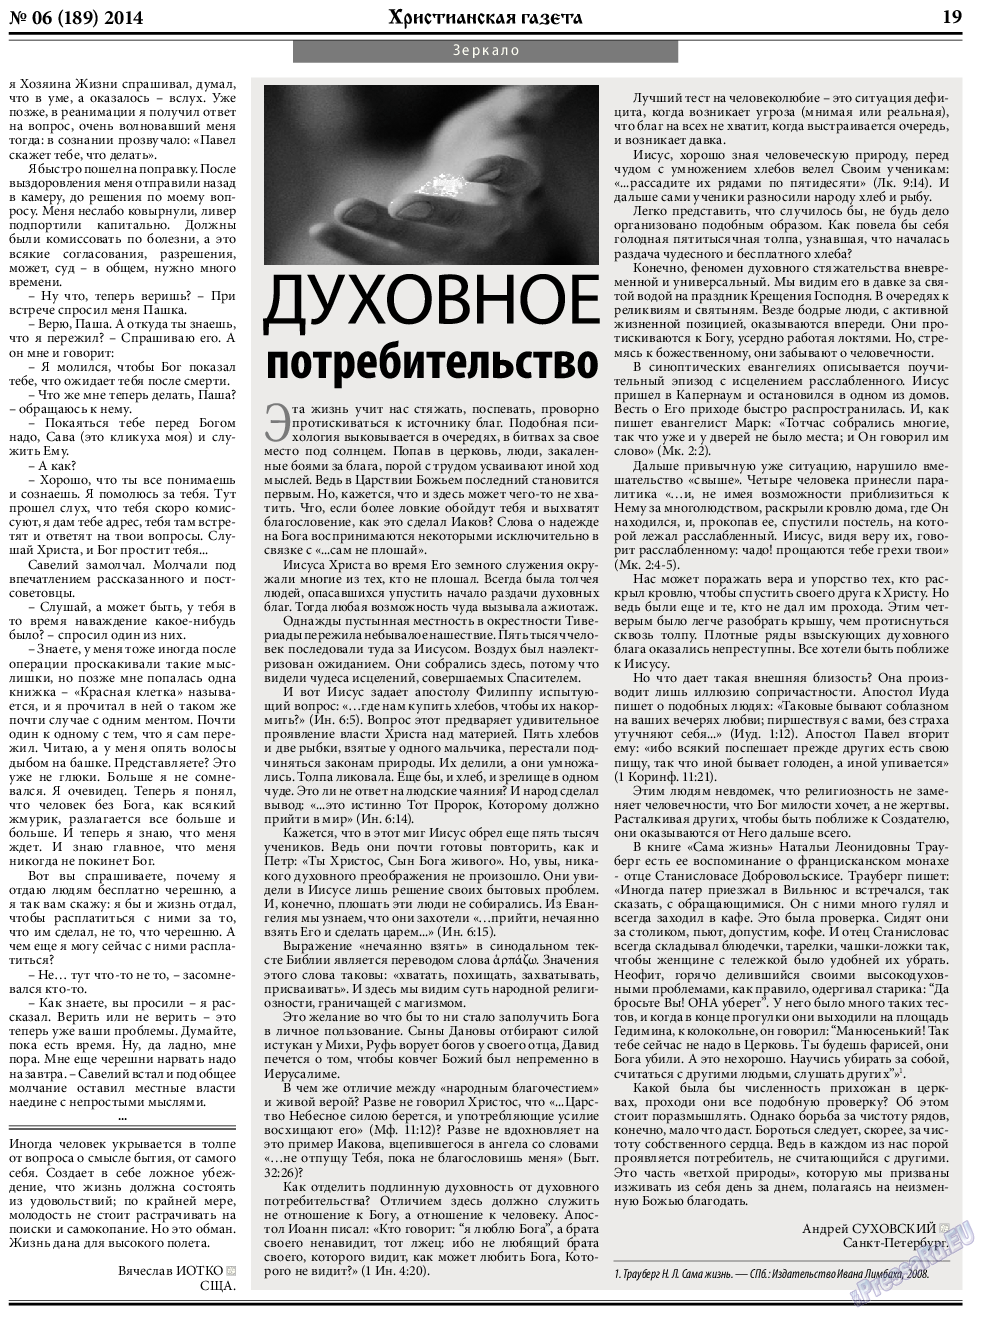 Христианская газета, газета. 2014 №6 стр.27